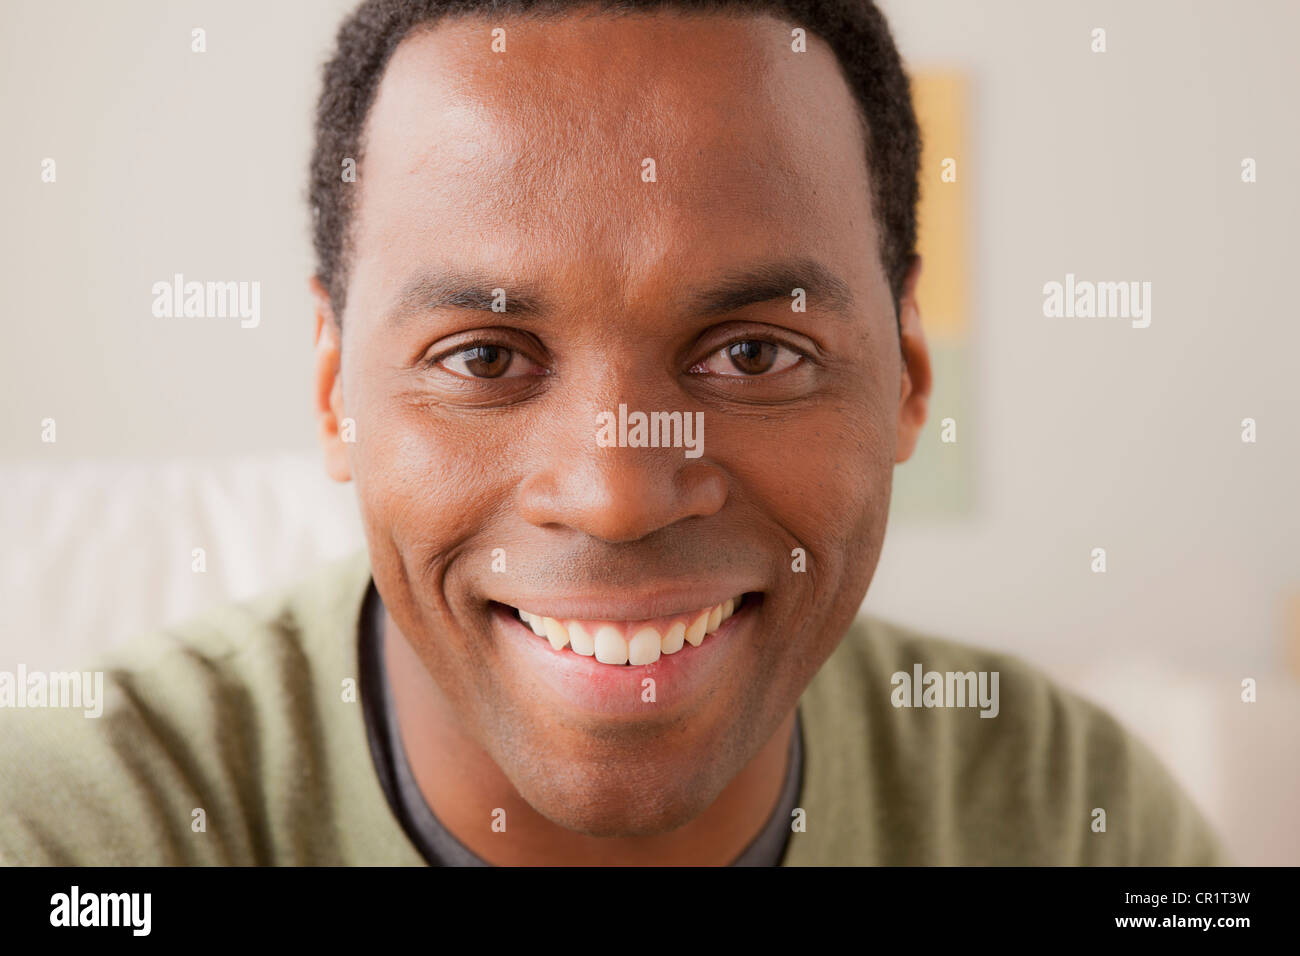 USA, Californie, Los Angeles, Portrait of smiling man Banque D'Images